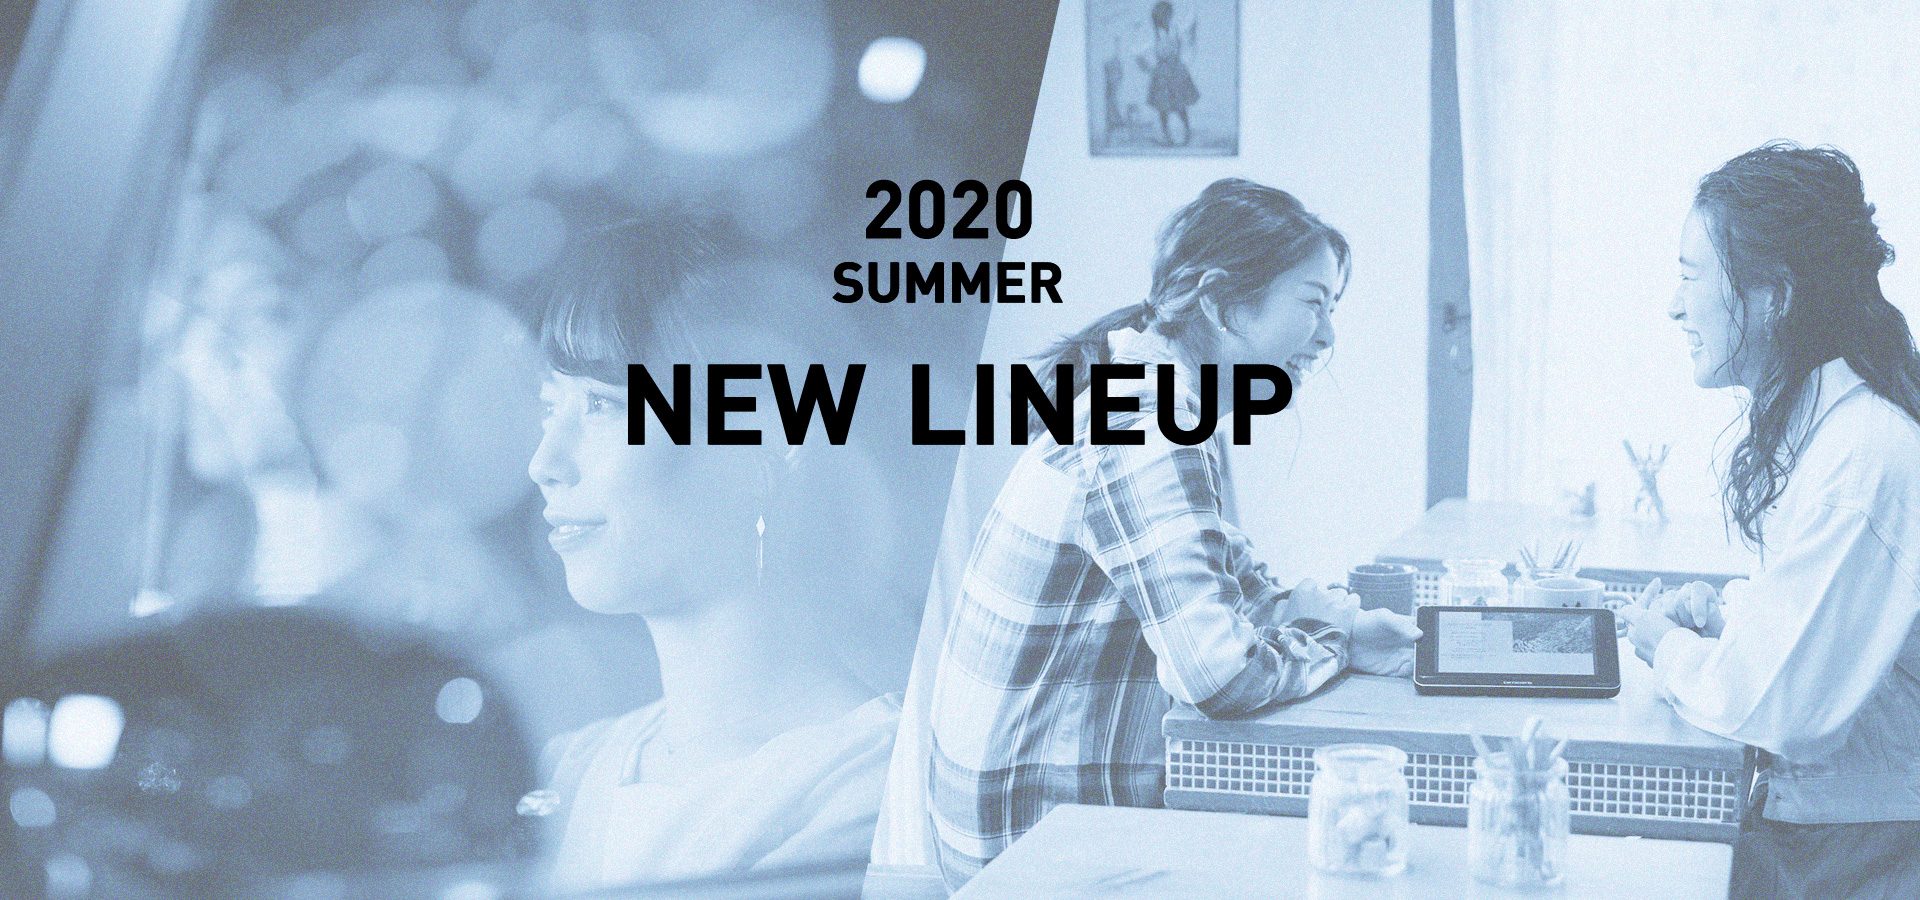 2020 SUMMER NEW LINEUP